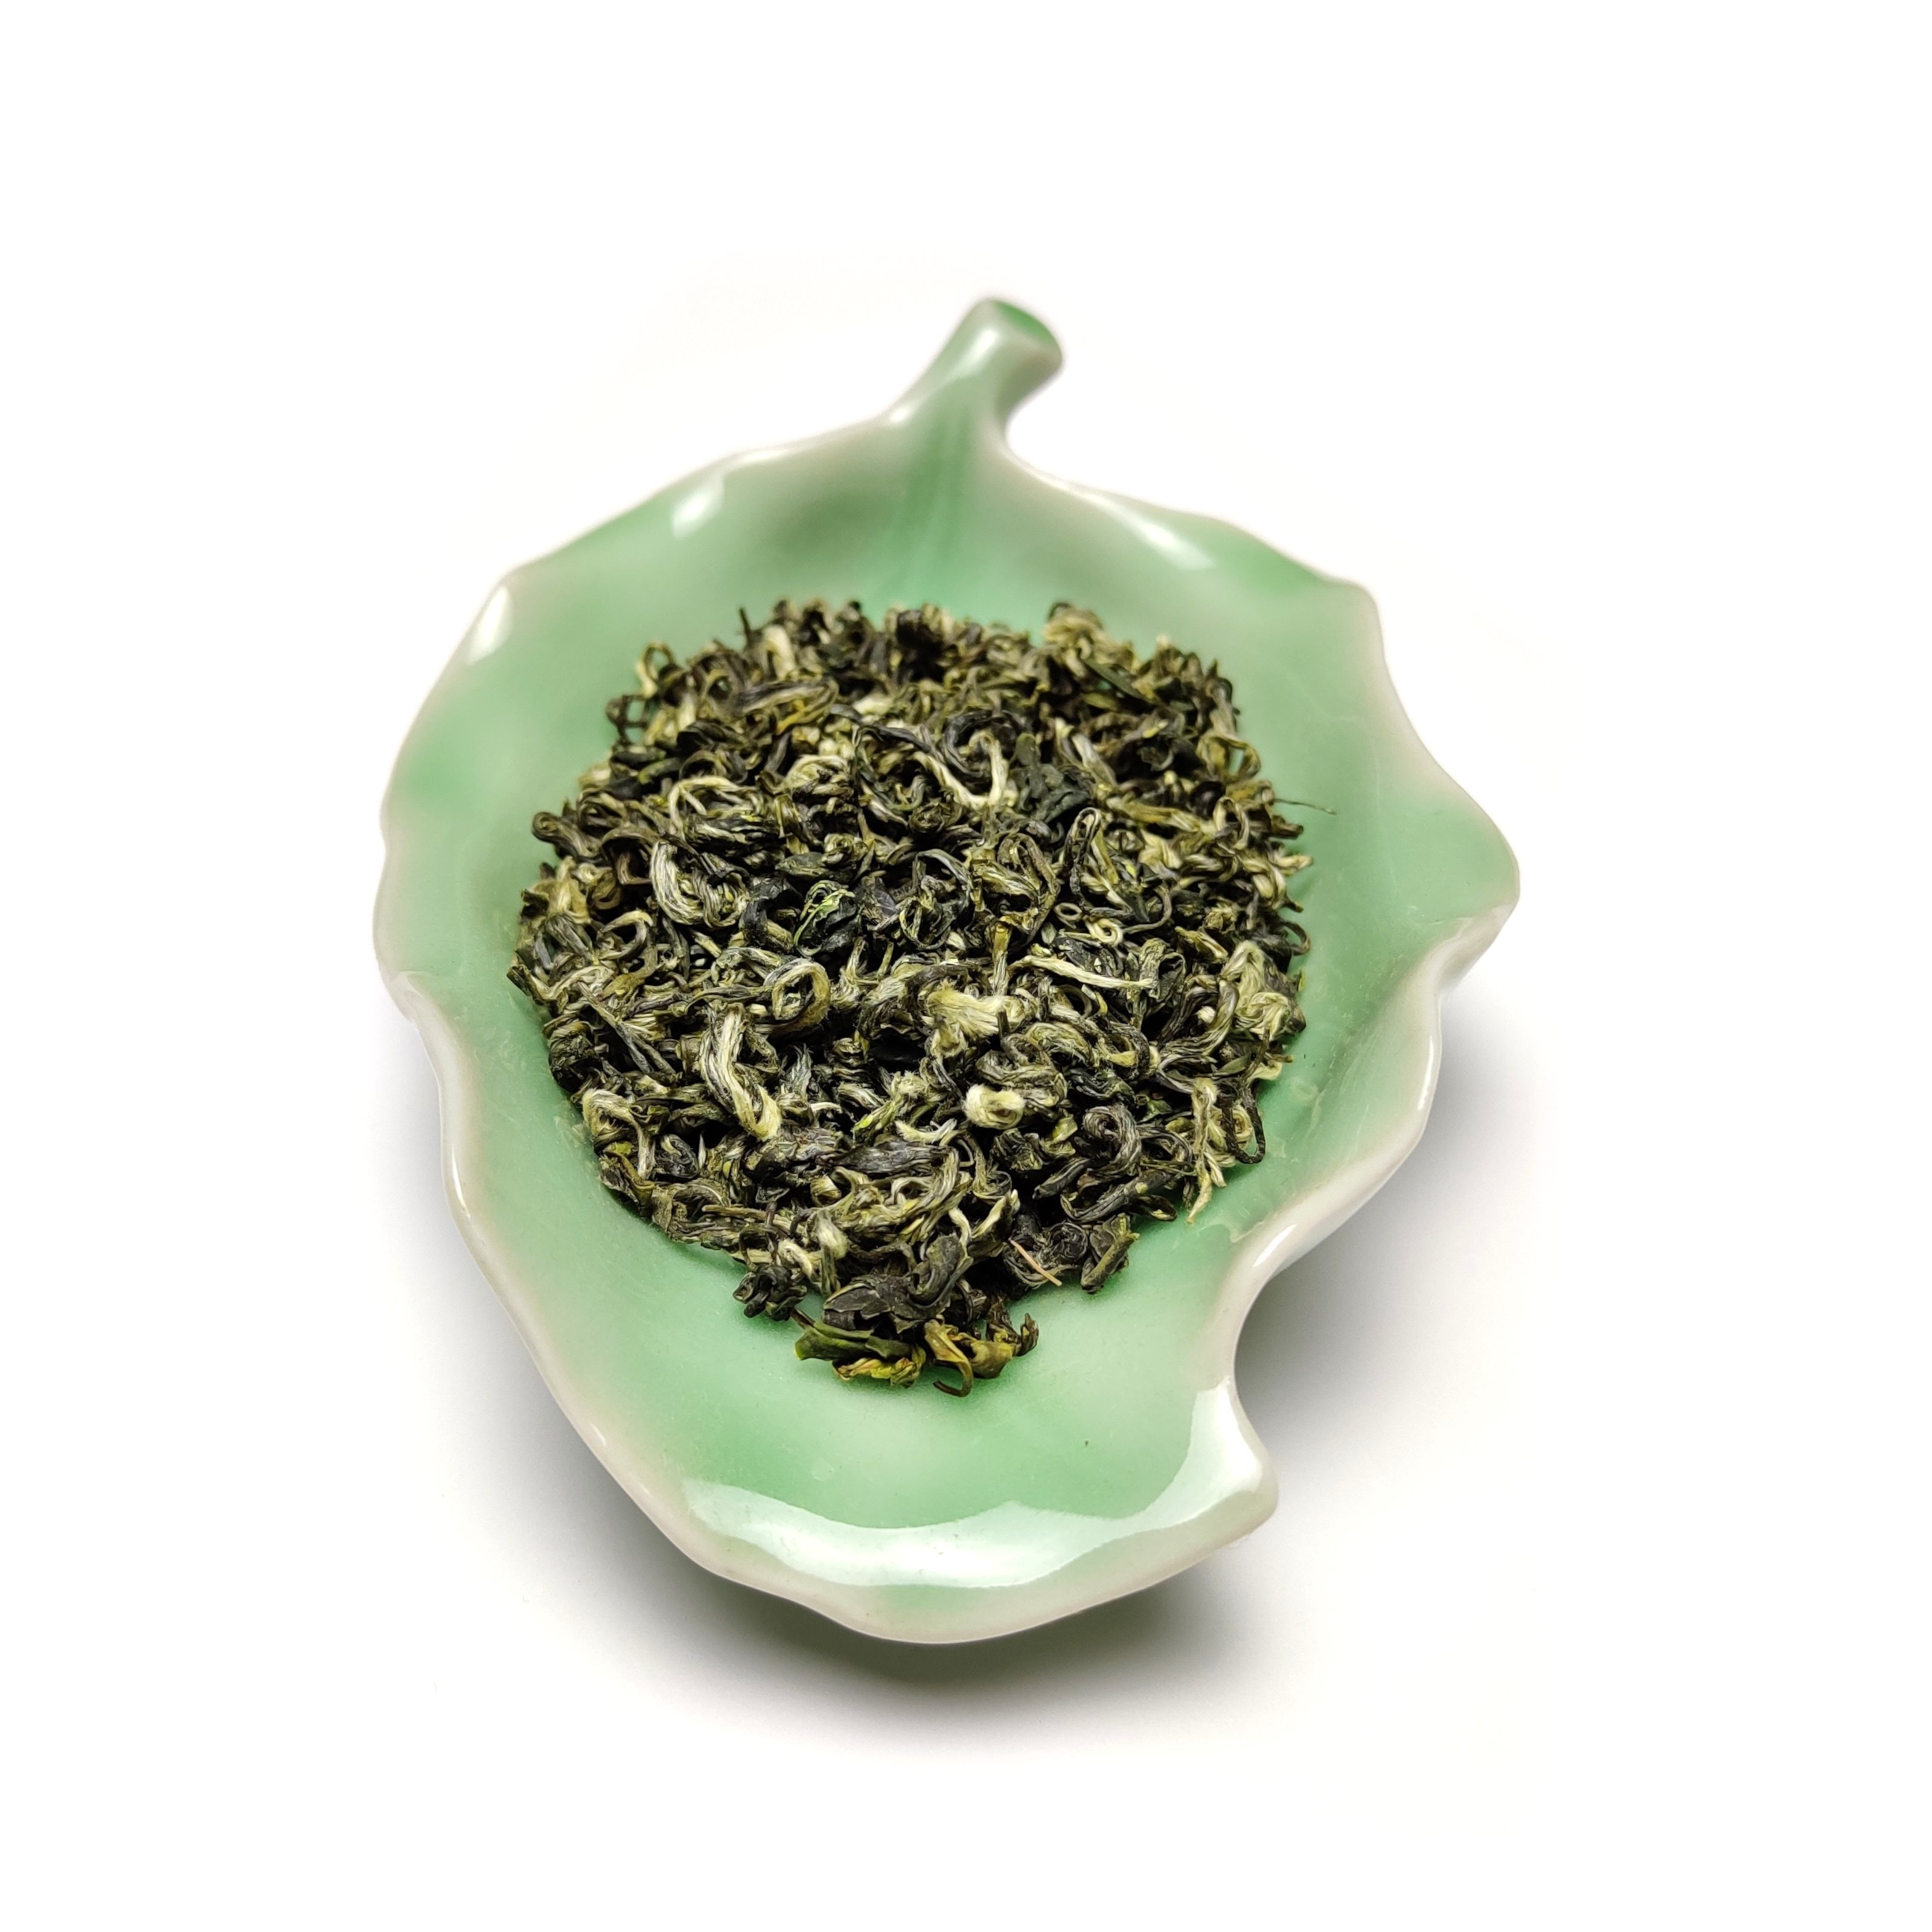 Купить хороший зеленый чай. Зеленый чай "Билочунь". Зеленый чай Green Snail. Китайский чай в виде шишки. Чай Билочунь зеленый в индивидуальной упаковке.